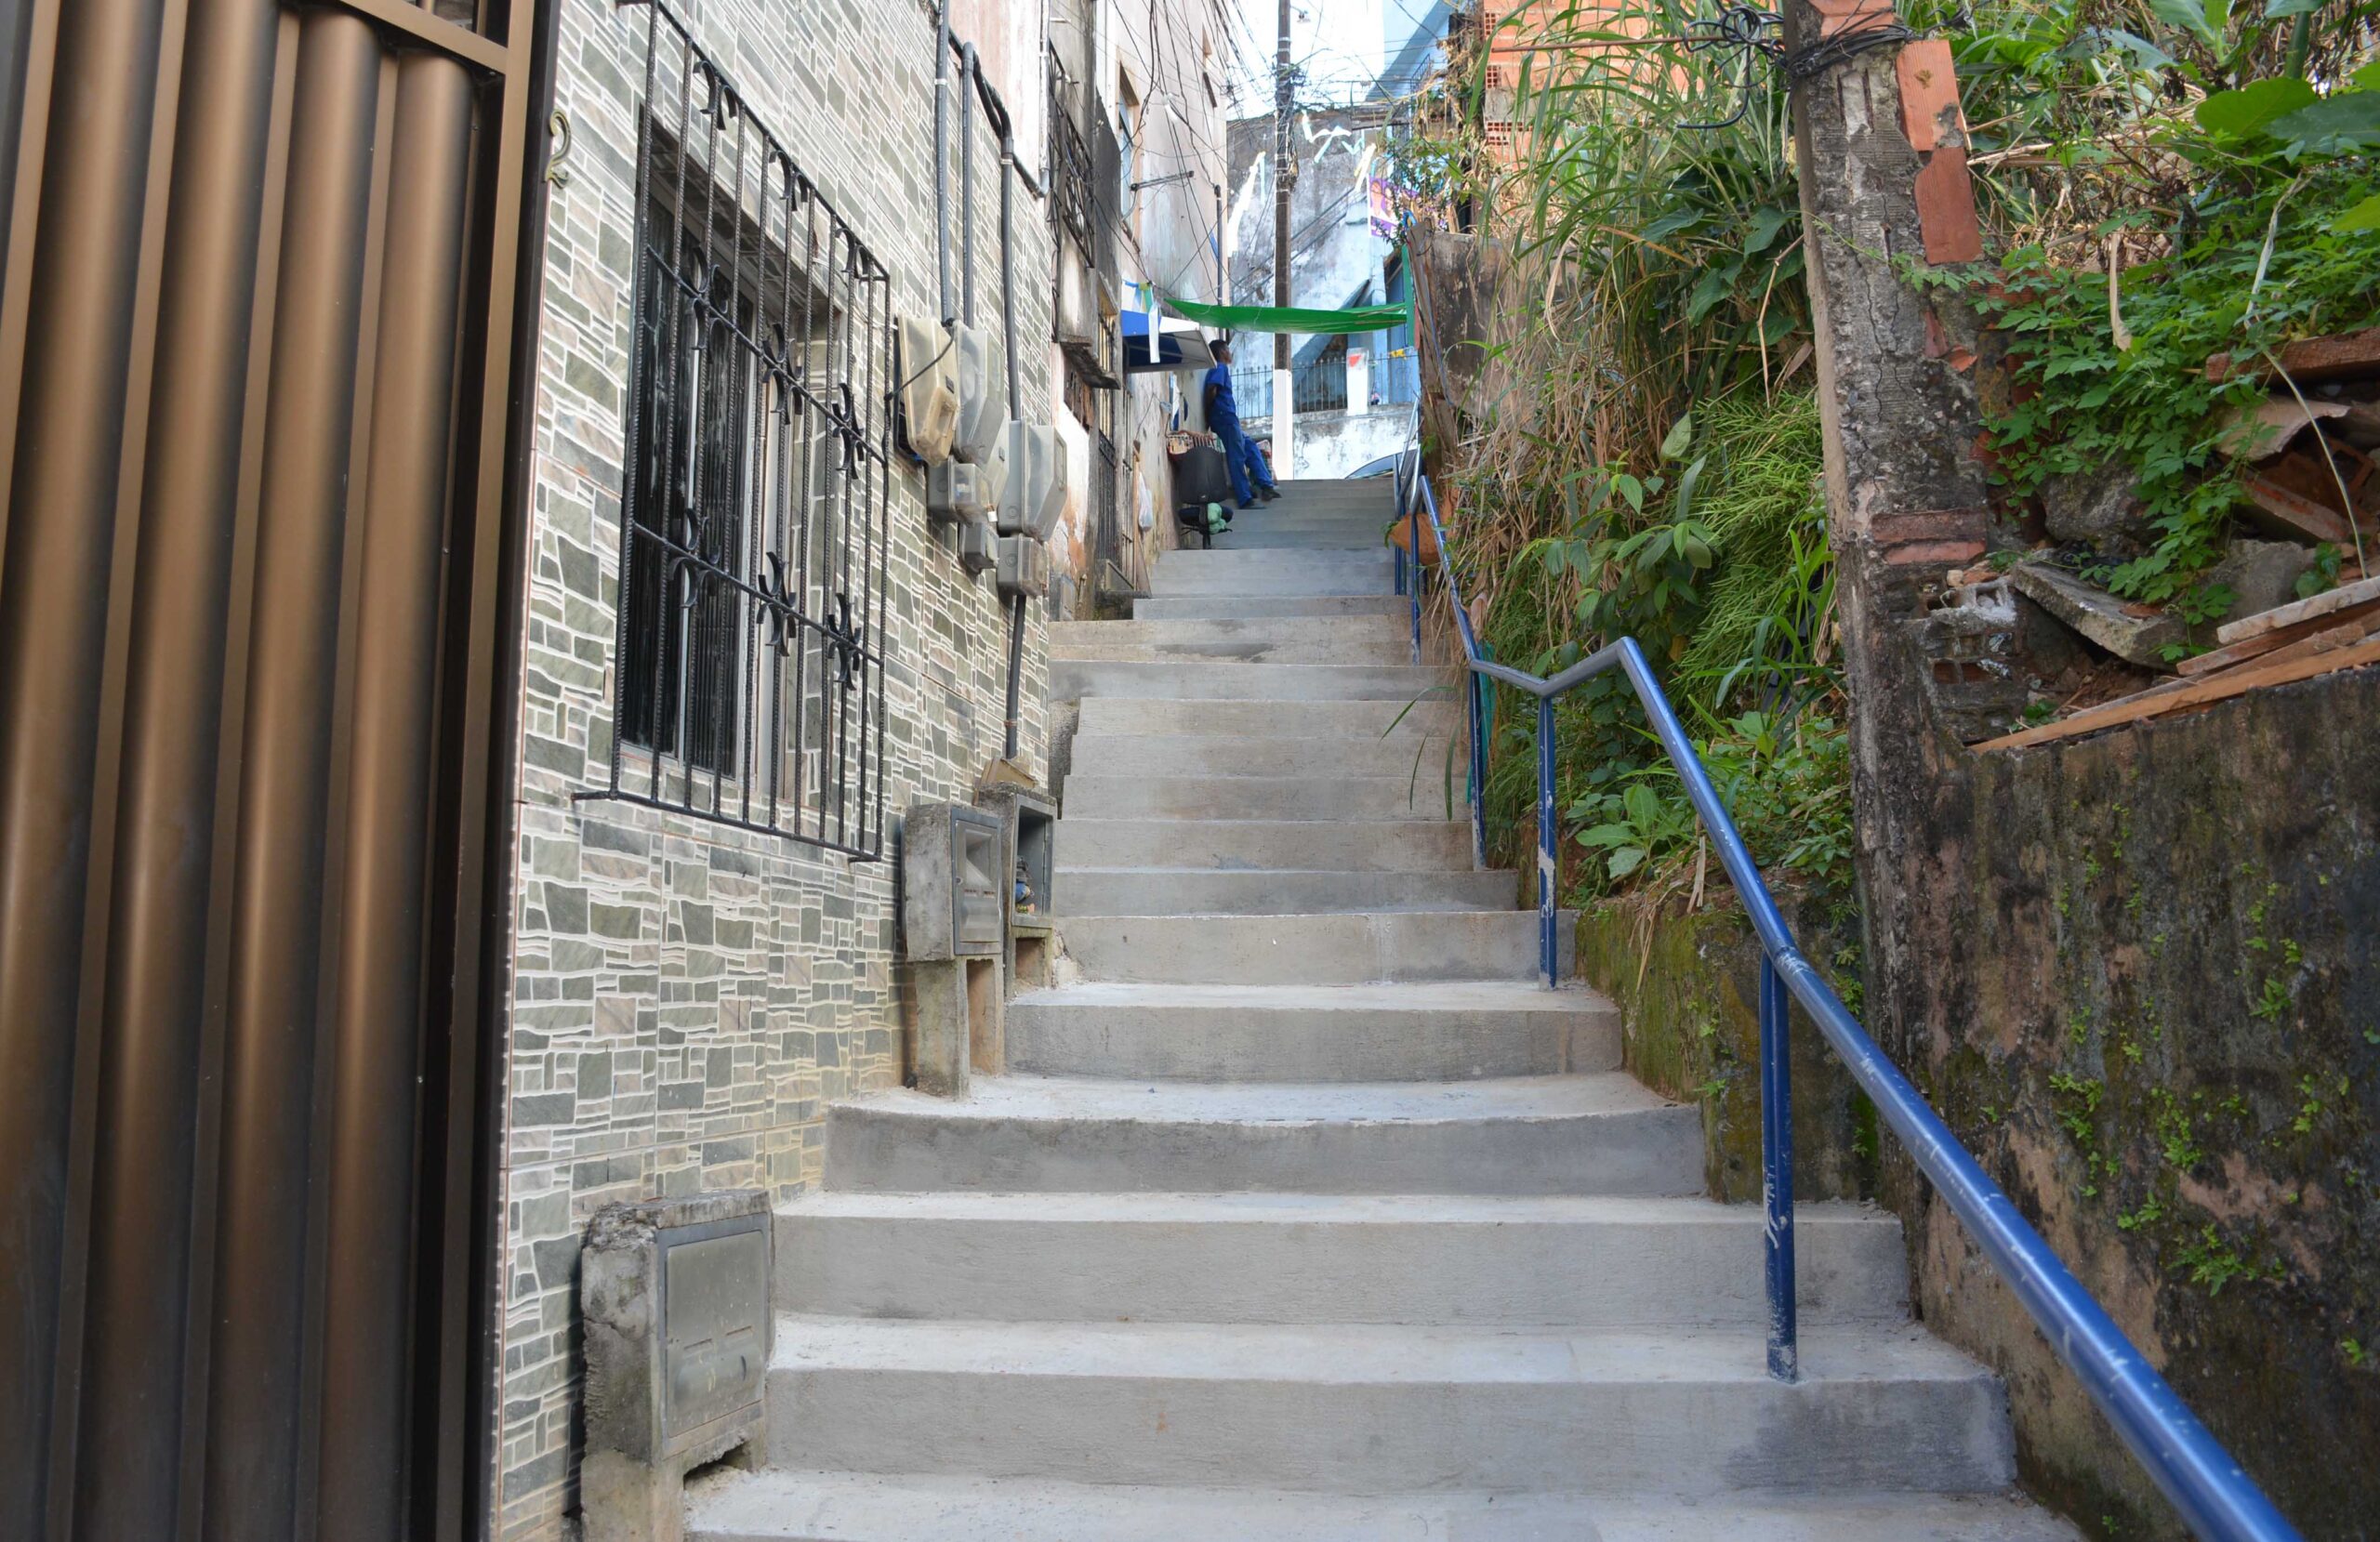 Programa Degrau no Grau segue na recuperação de escadarias em Salvador